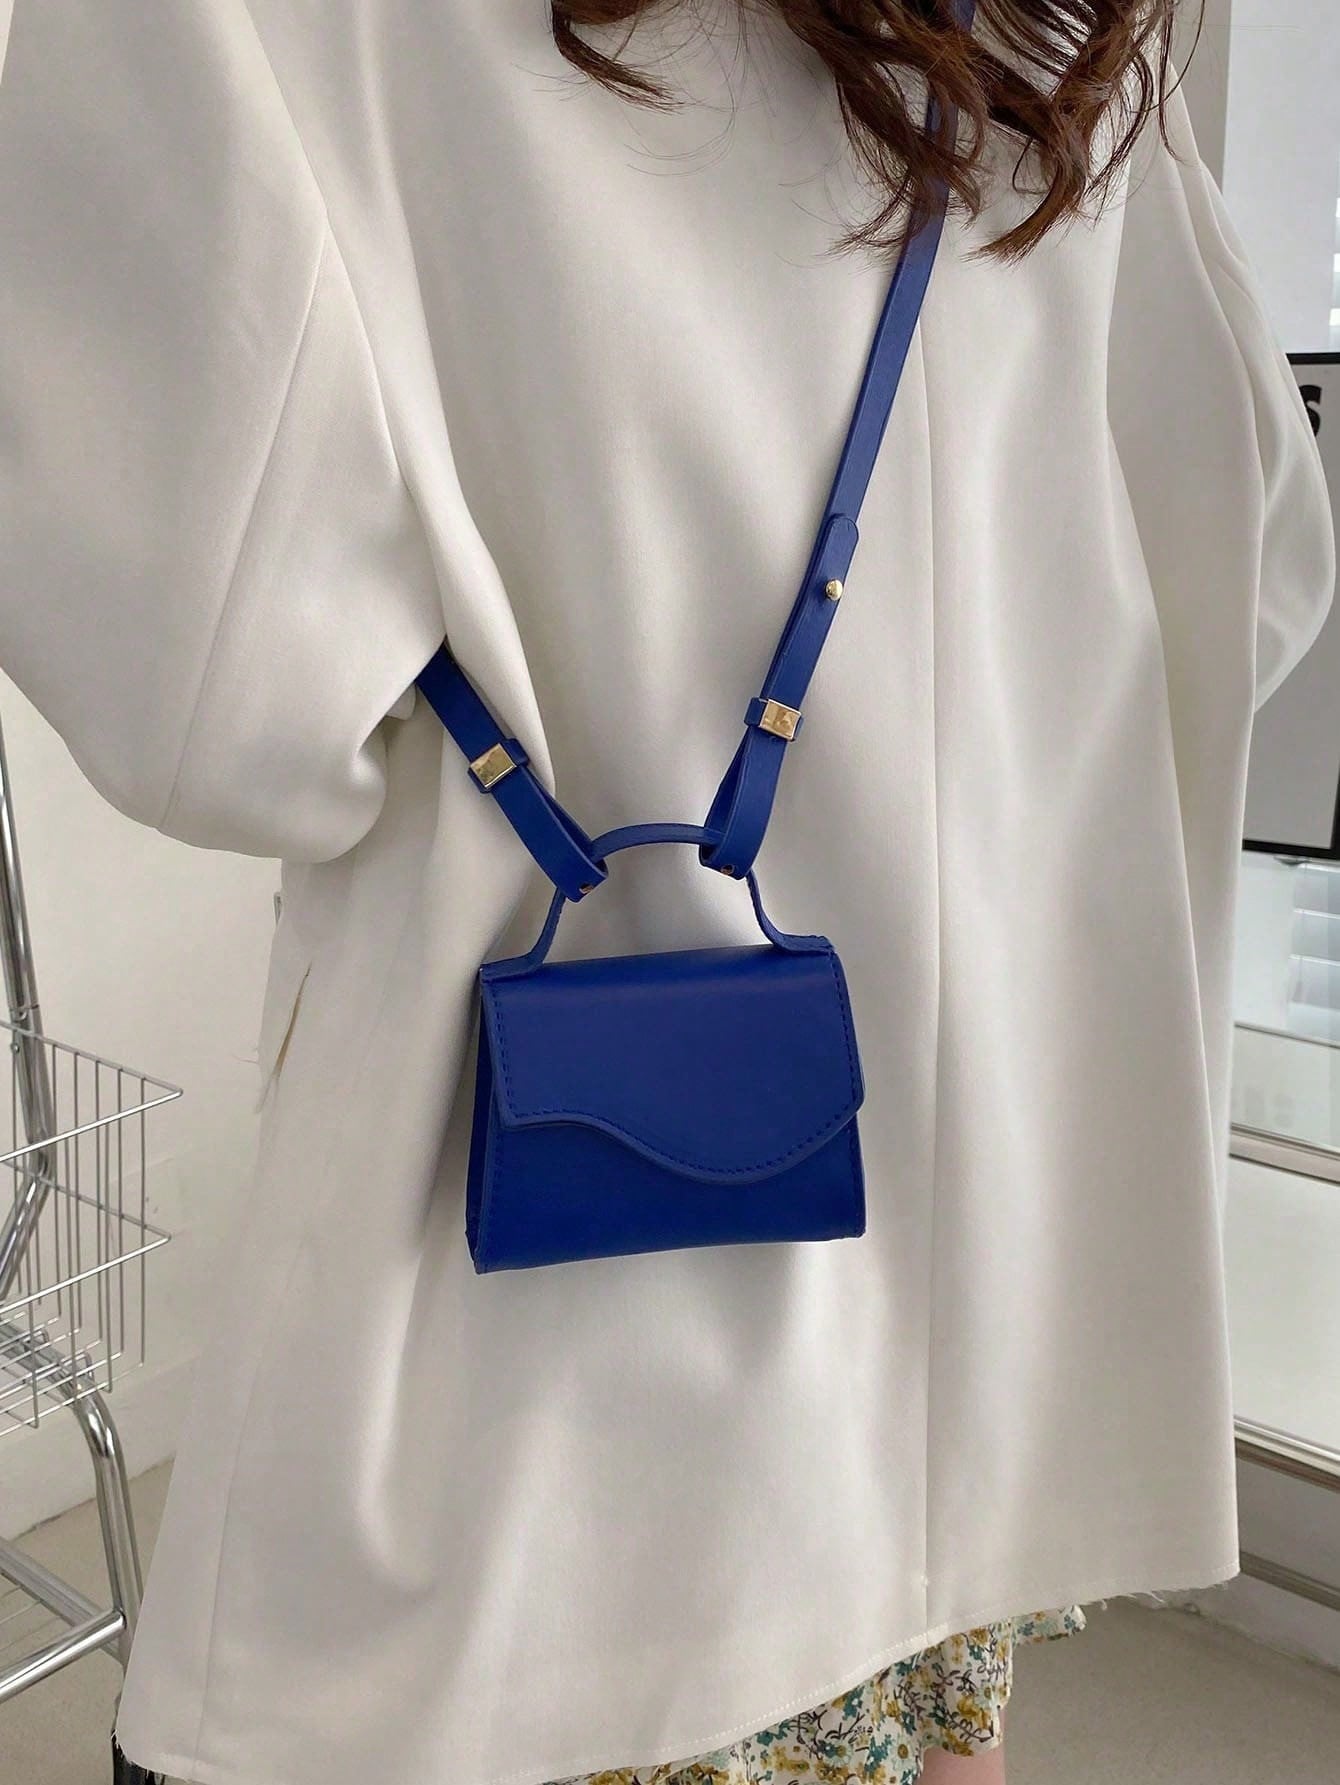 Мини-квадратная сумка с клапаном с геометрическим узором, королевский синий